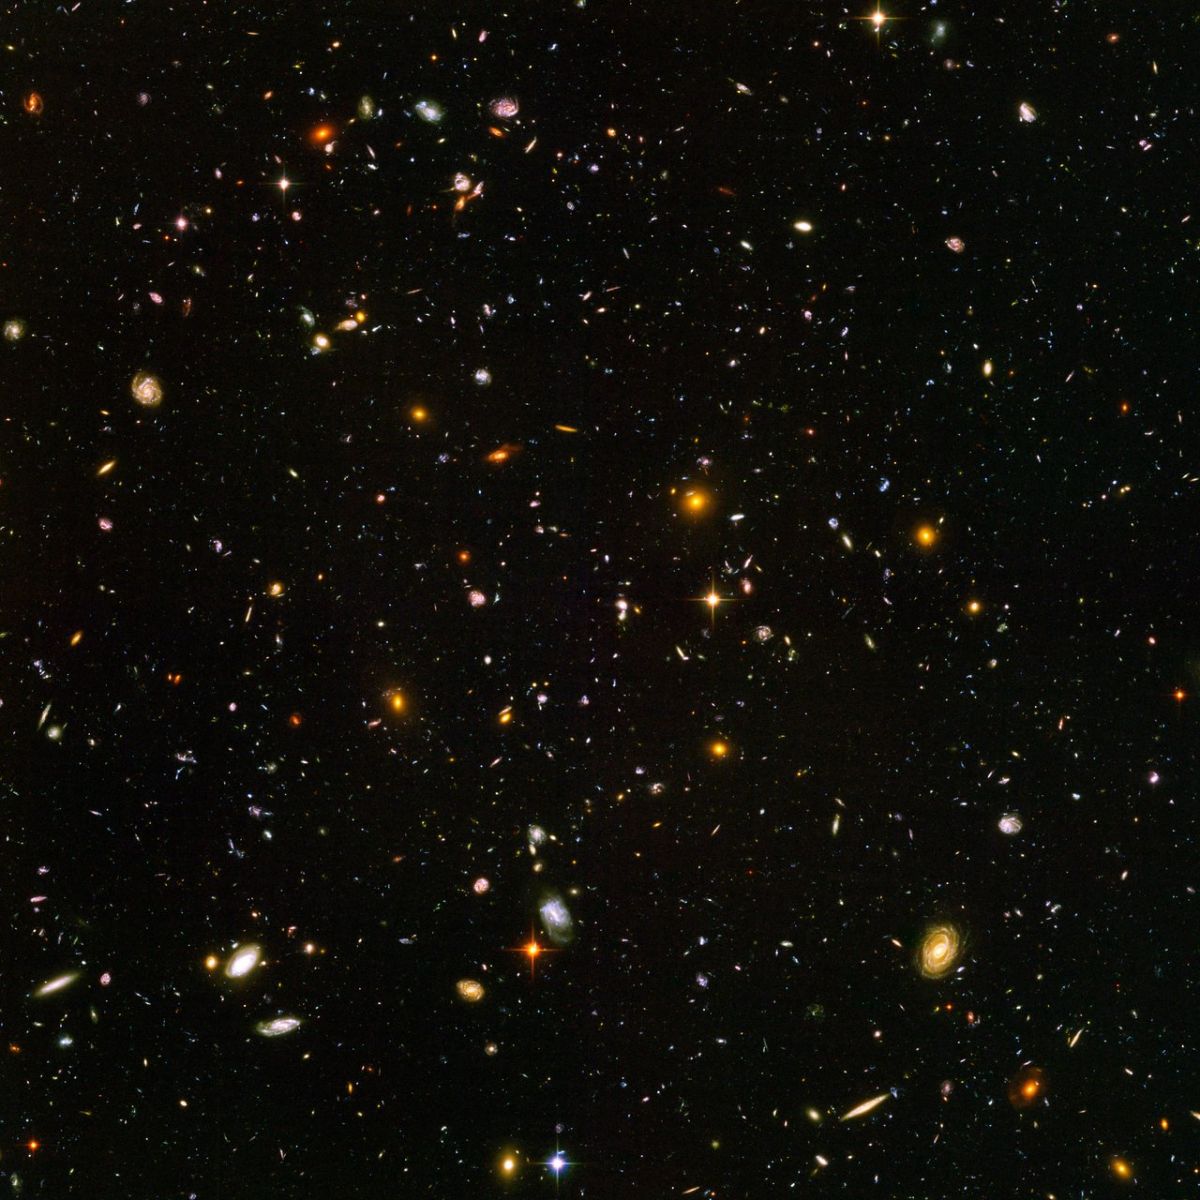 Снимок Hubble Ultra Deep Field (HUDF), на котором изображено около 10 тысяч галактик. Свет от самых маленьких, самых красных галактик на снимке (около 100 объектов) летел через космос почти 13 миллиардов лет / © NASA/ESA/Hubble Space Telescope